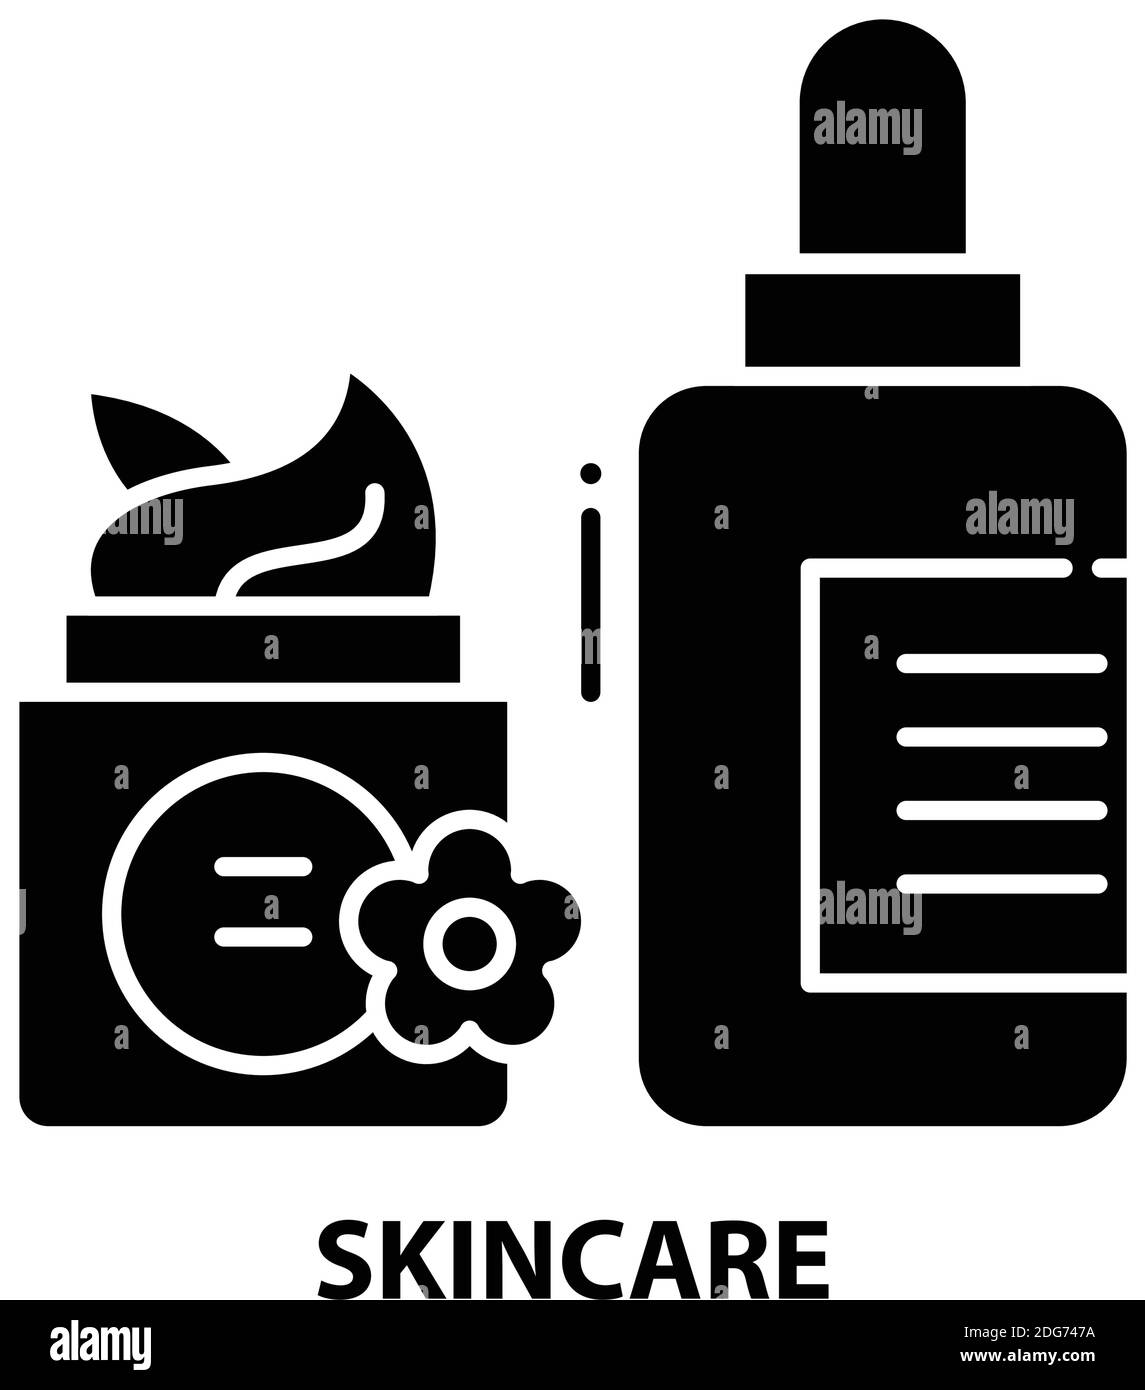 Hautpflegesymbol, schwarzes Vektorzeichen mit editierbaren Konturen, Konzeptdarstellung Stock Vektor